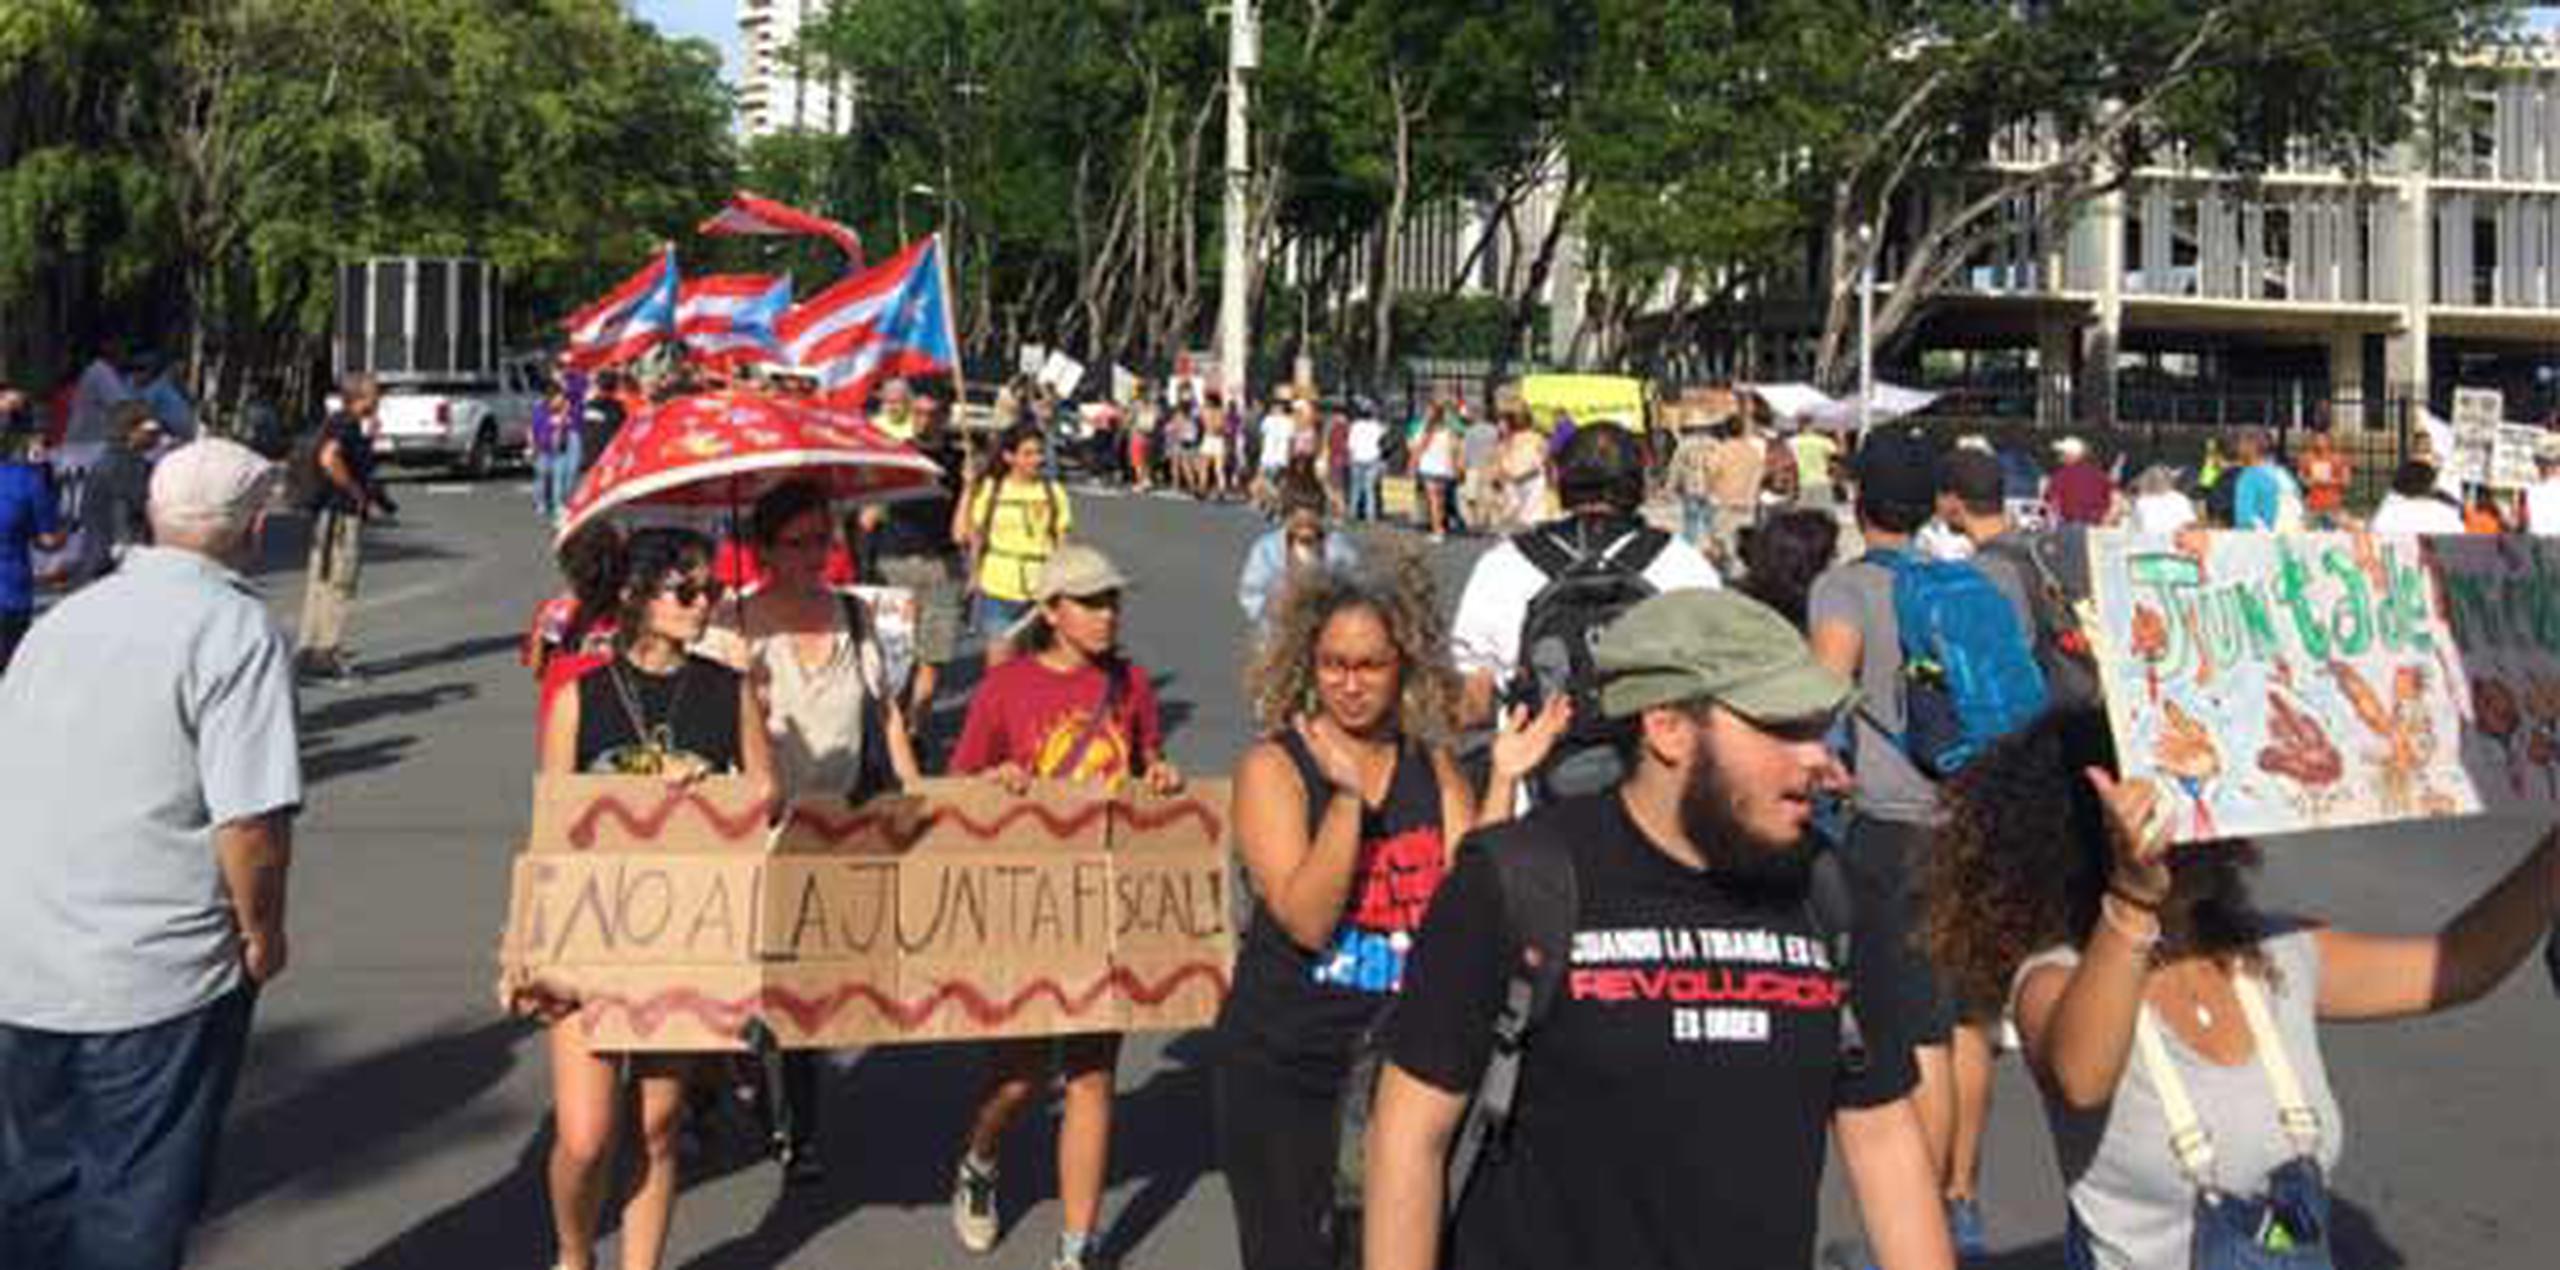 Letreros que leen "¡no a la junta fiscal!" son algunos de los muchos afiches que se ven en la marcha donde domina la bandera de Puerto Rico.  (jayson.vazquez@gfrmedia.com)